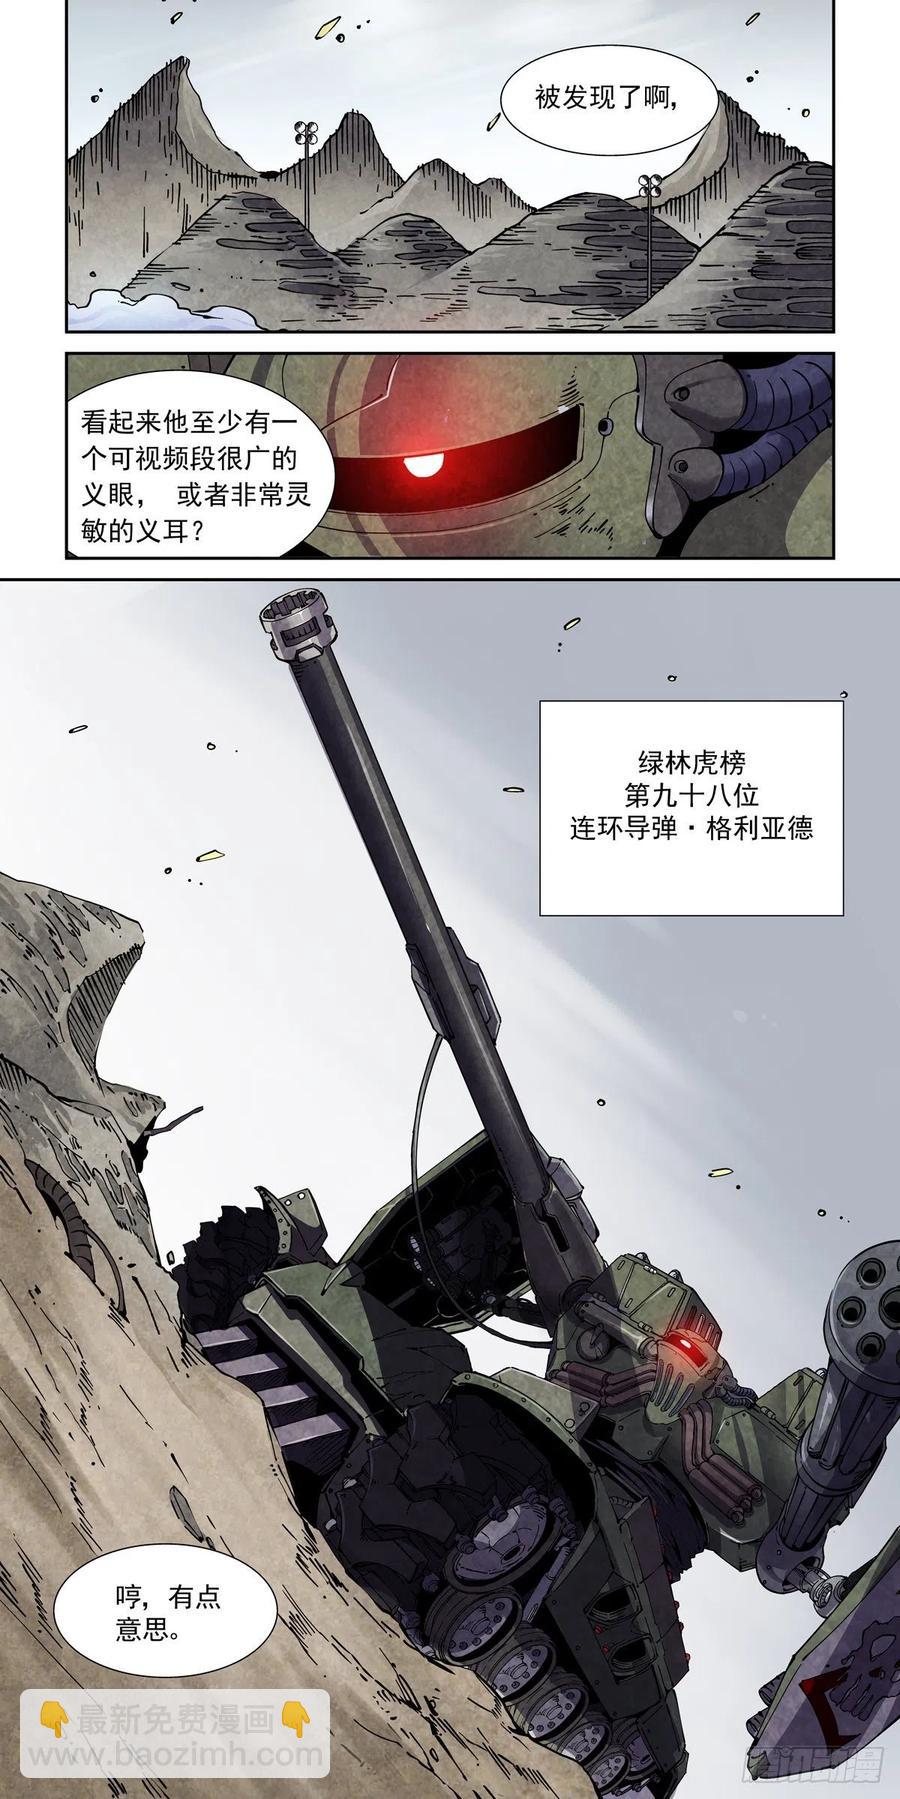 賽博英雄傳 - 042槍炮高手 - 2